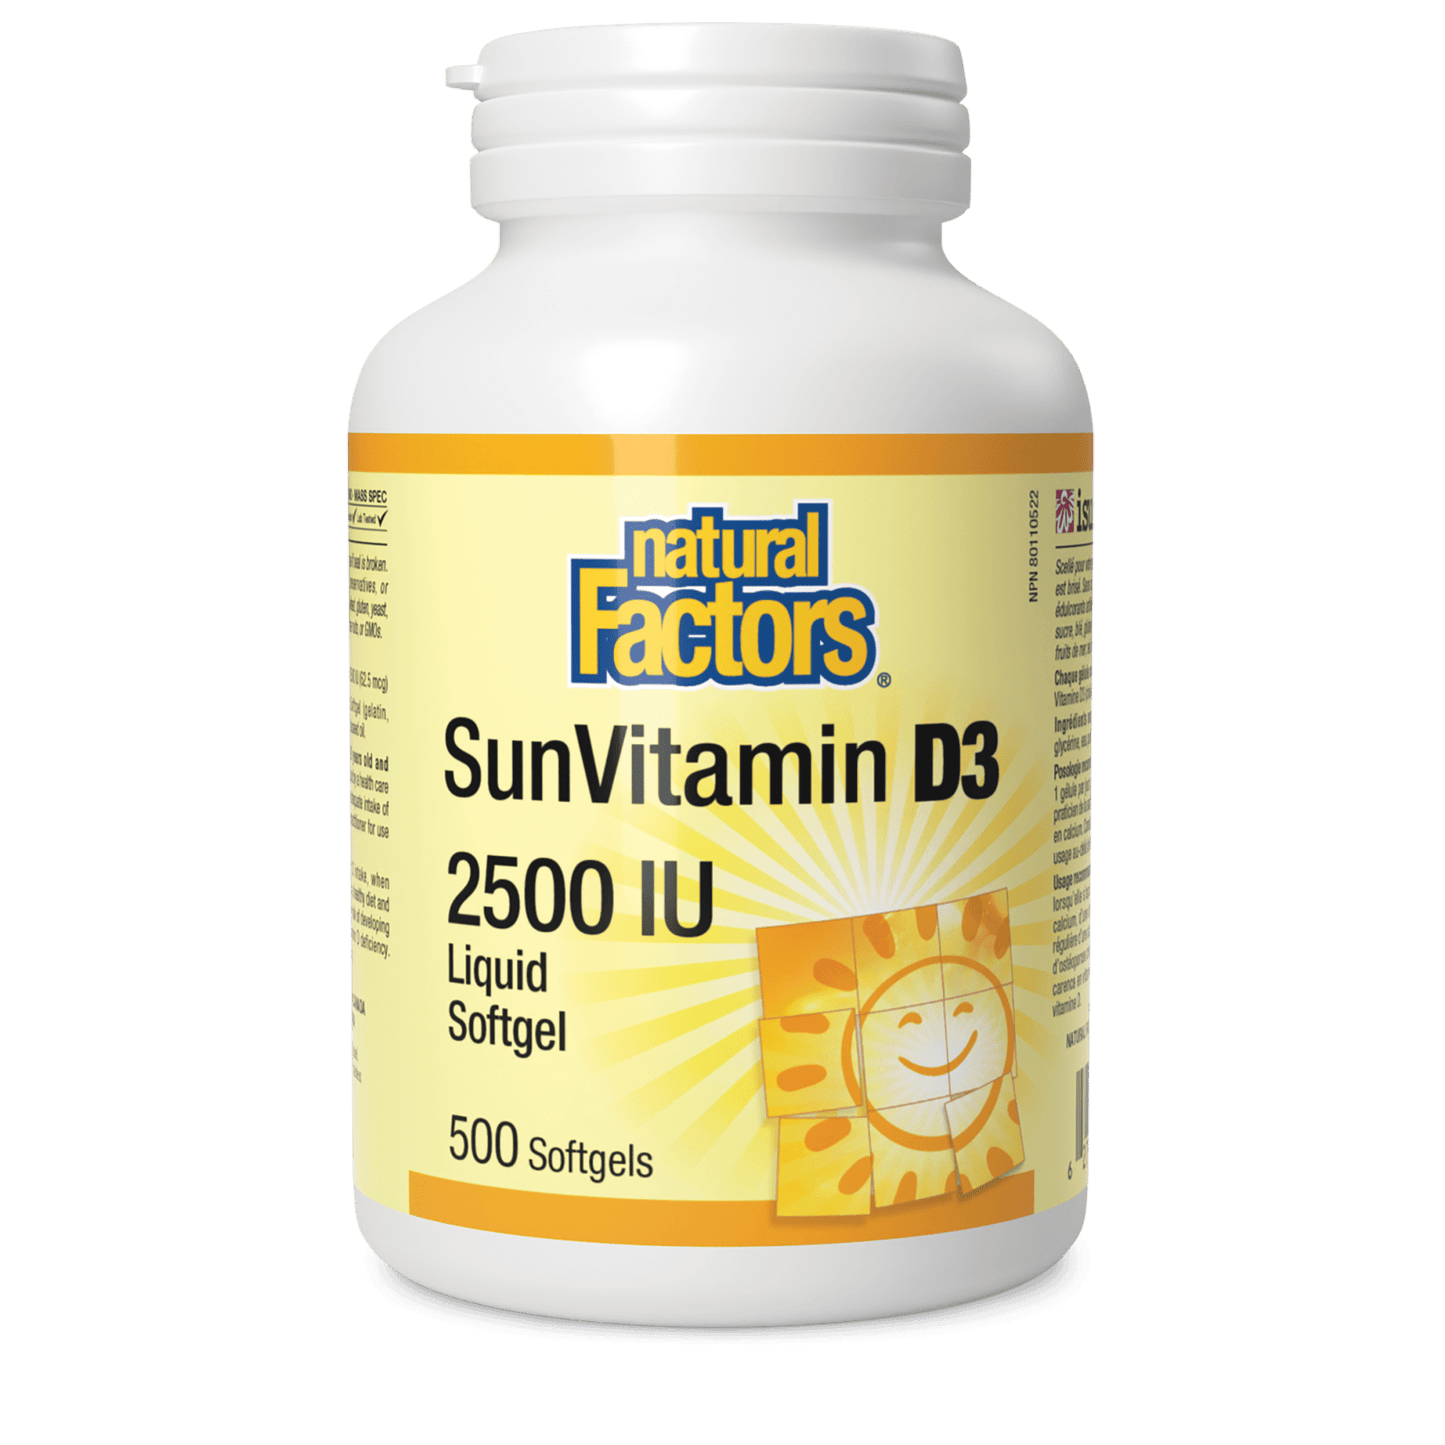 SunVitamin D3 Softgels 2500 IU, Natural Factors|v|image|1074